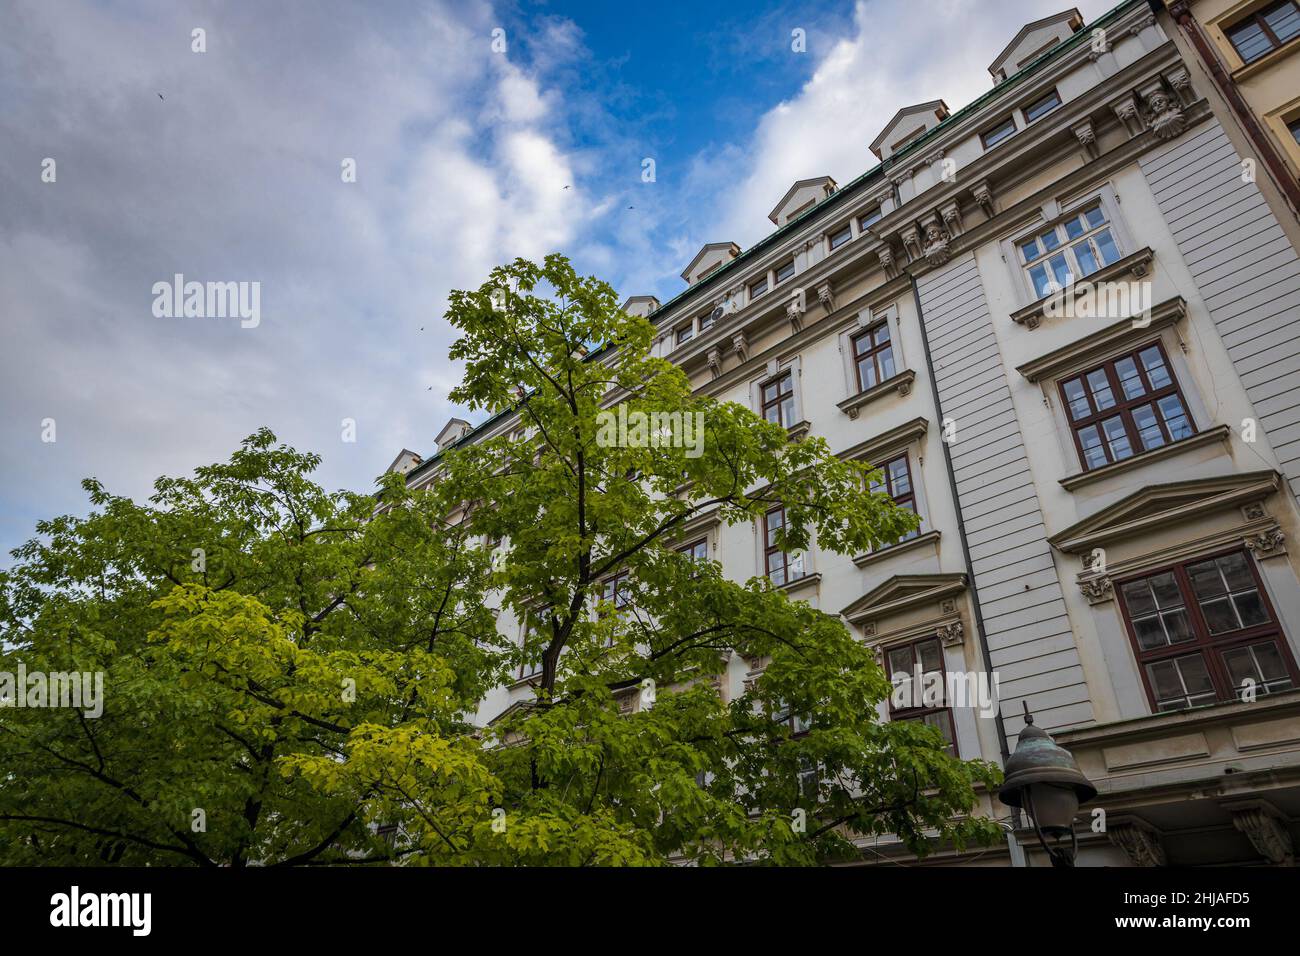 Facade of old historical building in Belgrade city center Stock Photo